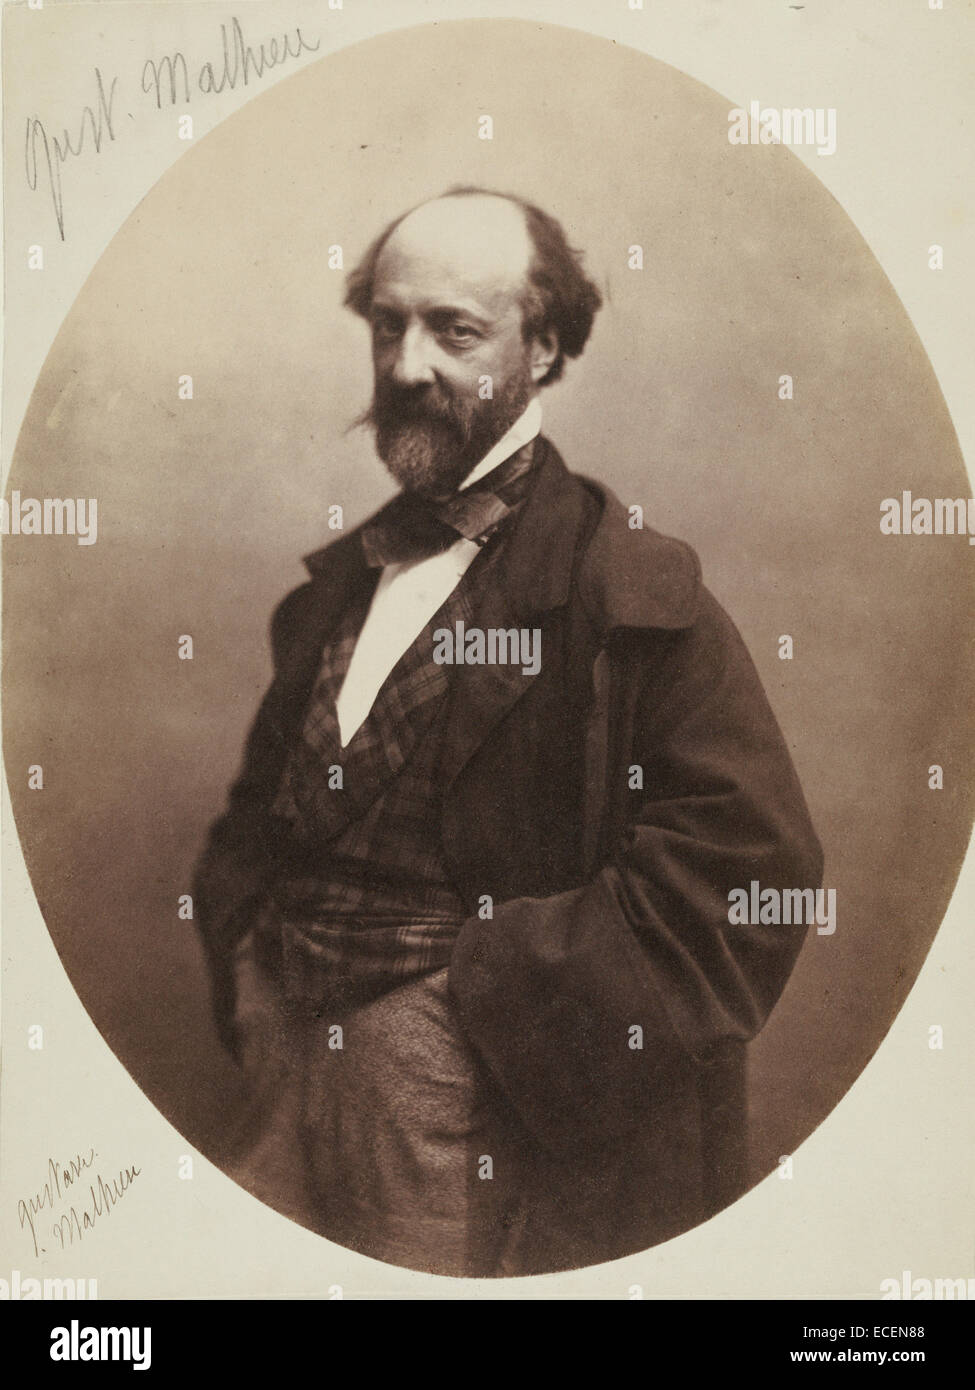 Gustave Mathieu; Nadar [Gaspard Félix Tournachon], Francia, 1820 - 1910; 1855 - 1859; impresión de papel salado Foto de stock